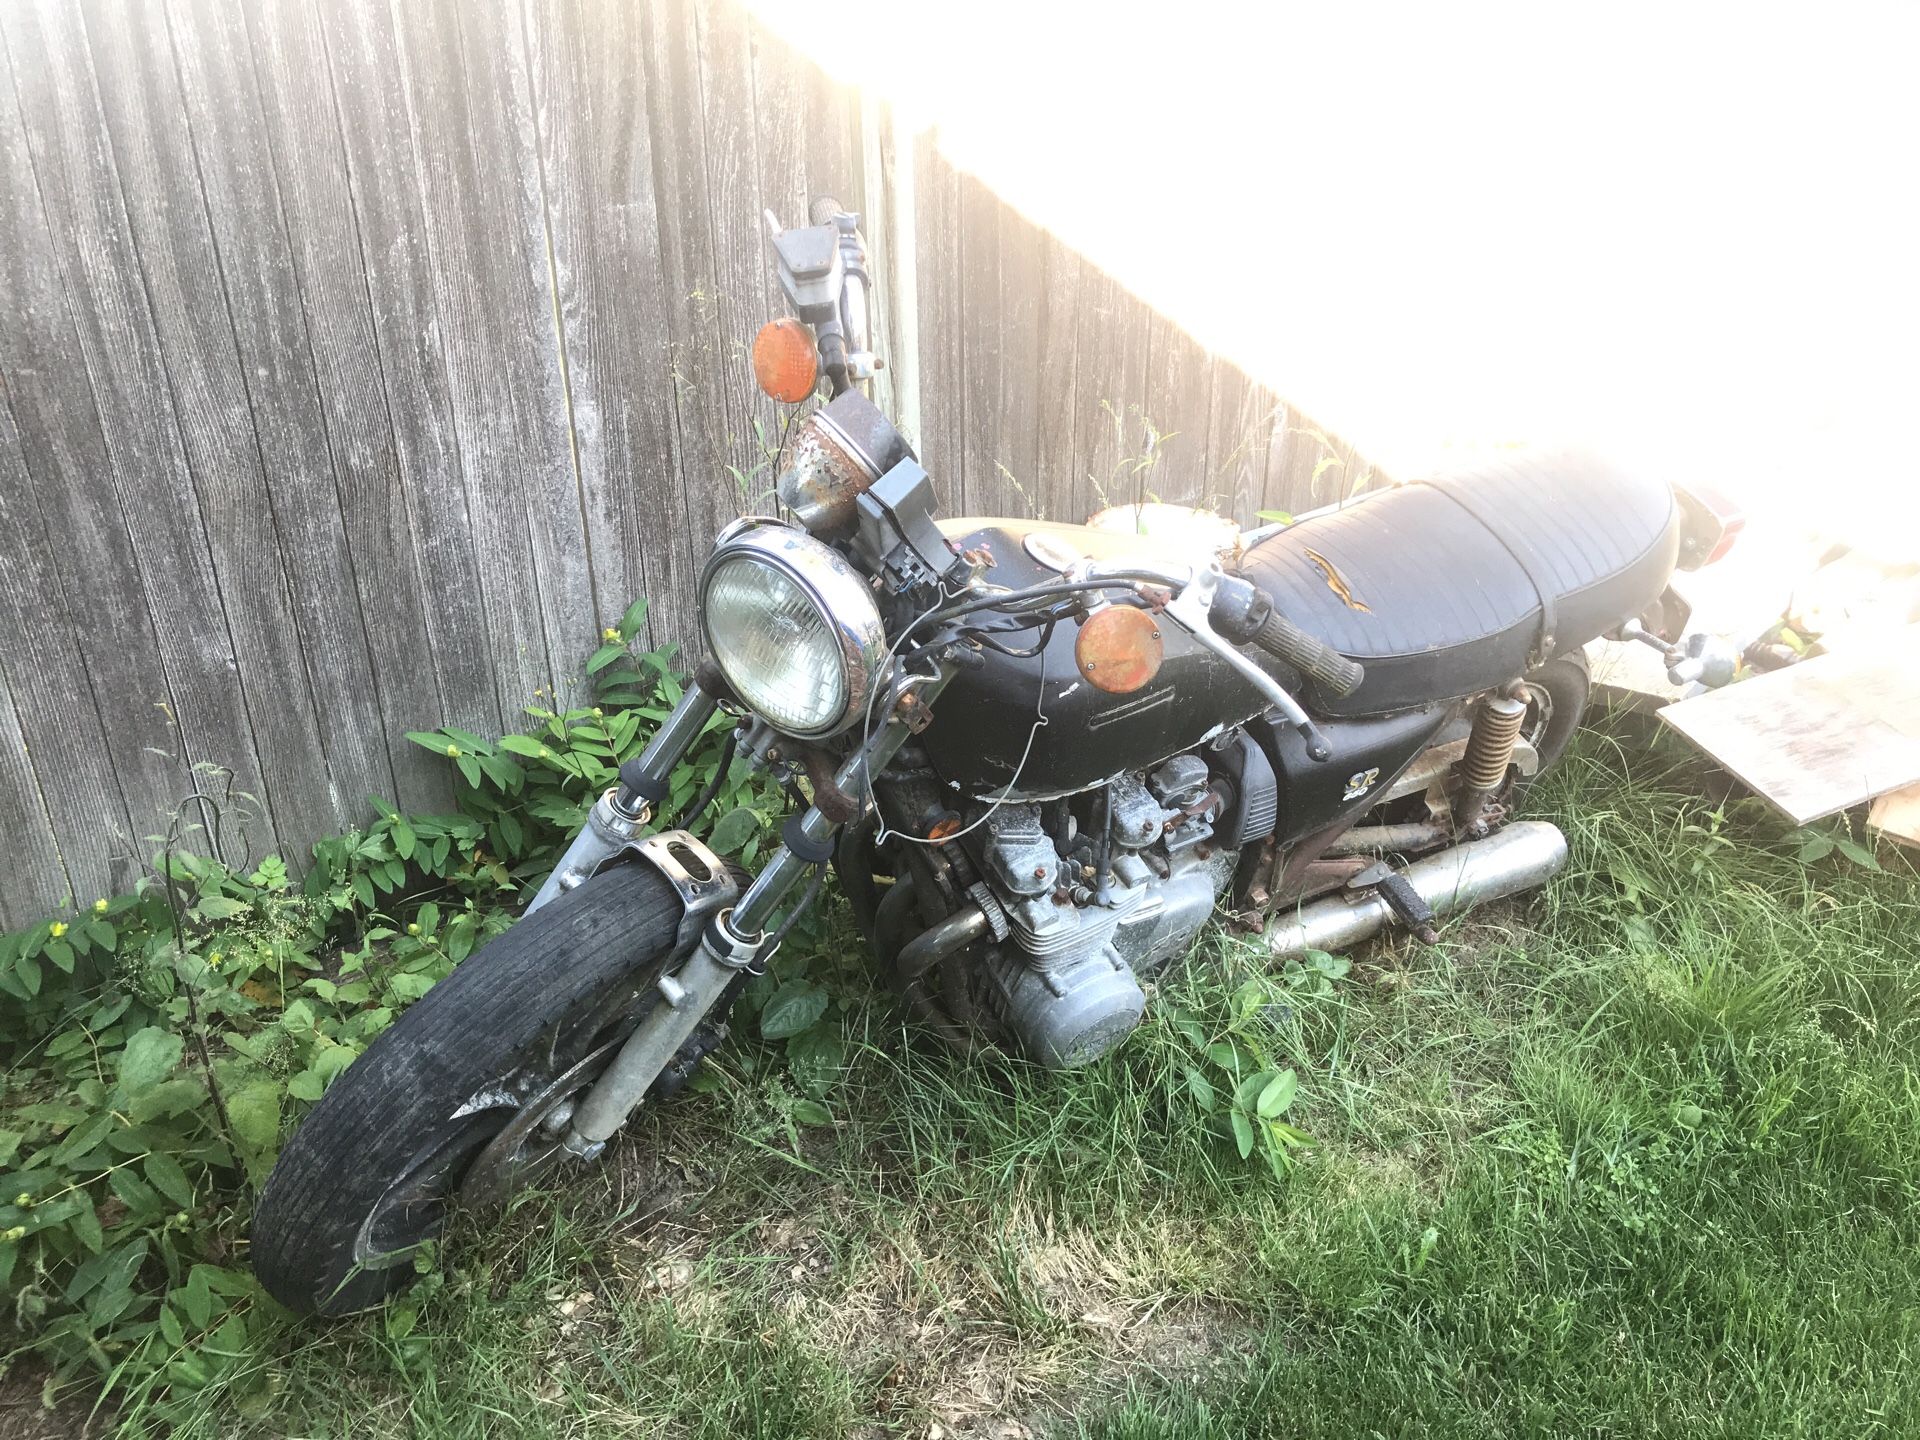 Old Kawasaki motorcycle